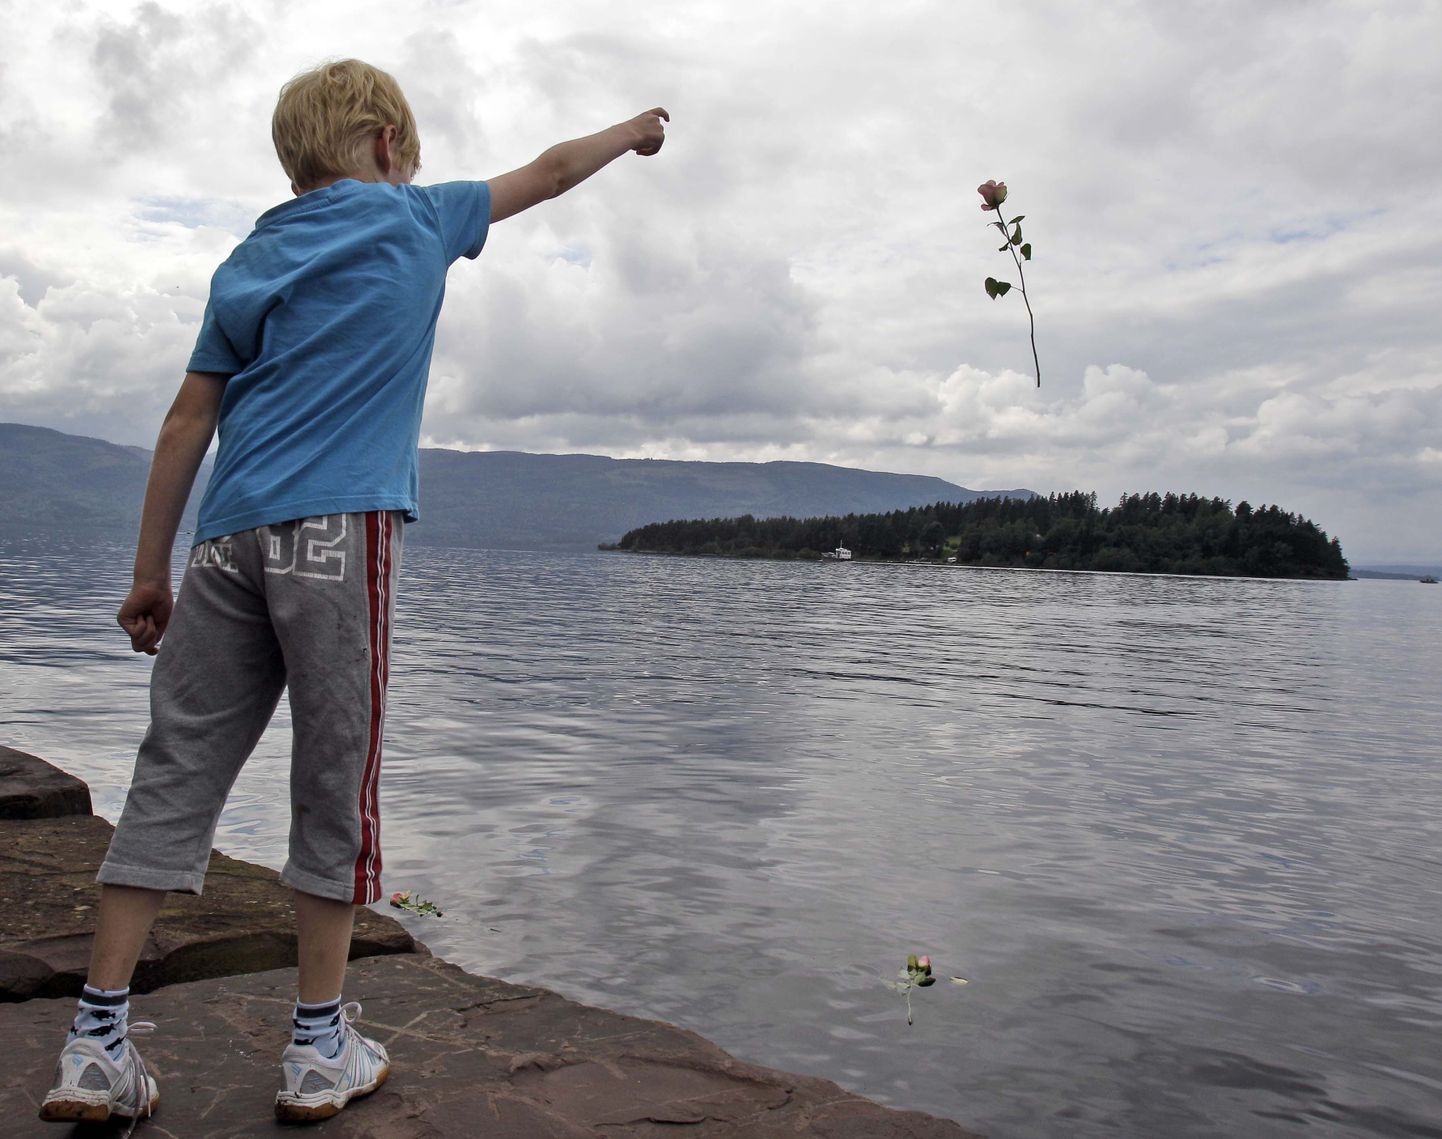 Norra massimõrvarilt armu palunud poiss on kroonprintsessi vennapoeg